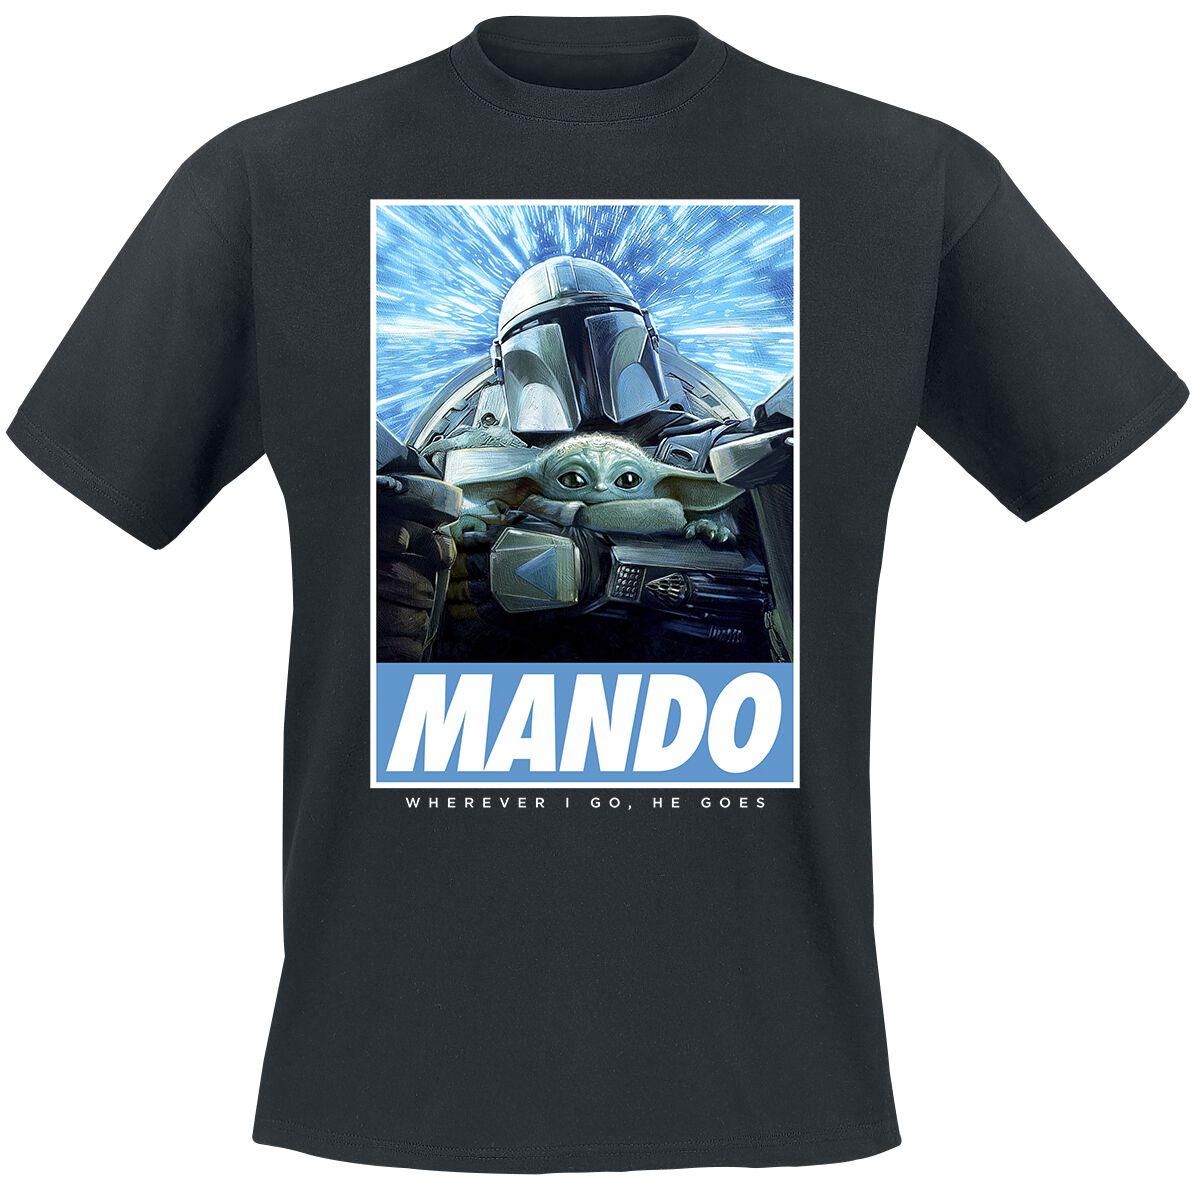 Star Wars T-Shirt - The Mandalorian - Season 3 - Wherever I Go - S bis 4XL - für Männer - Größe 4XL - schwarz  - Lizenzierter Fanartikel